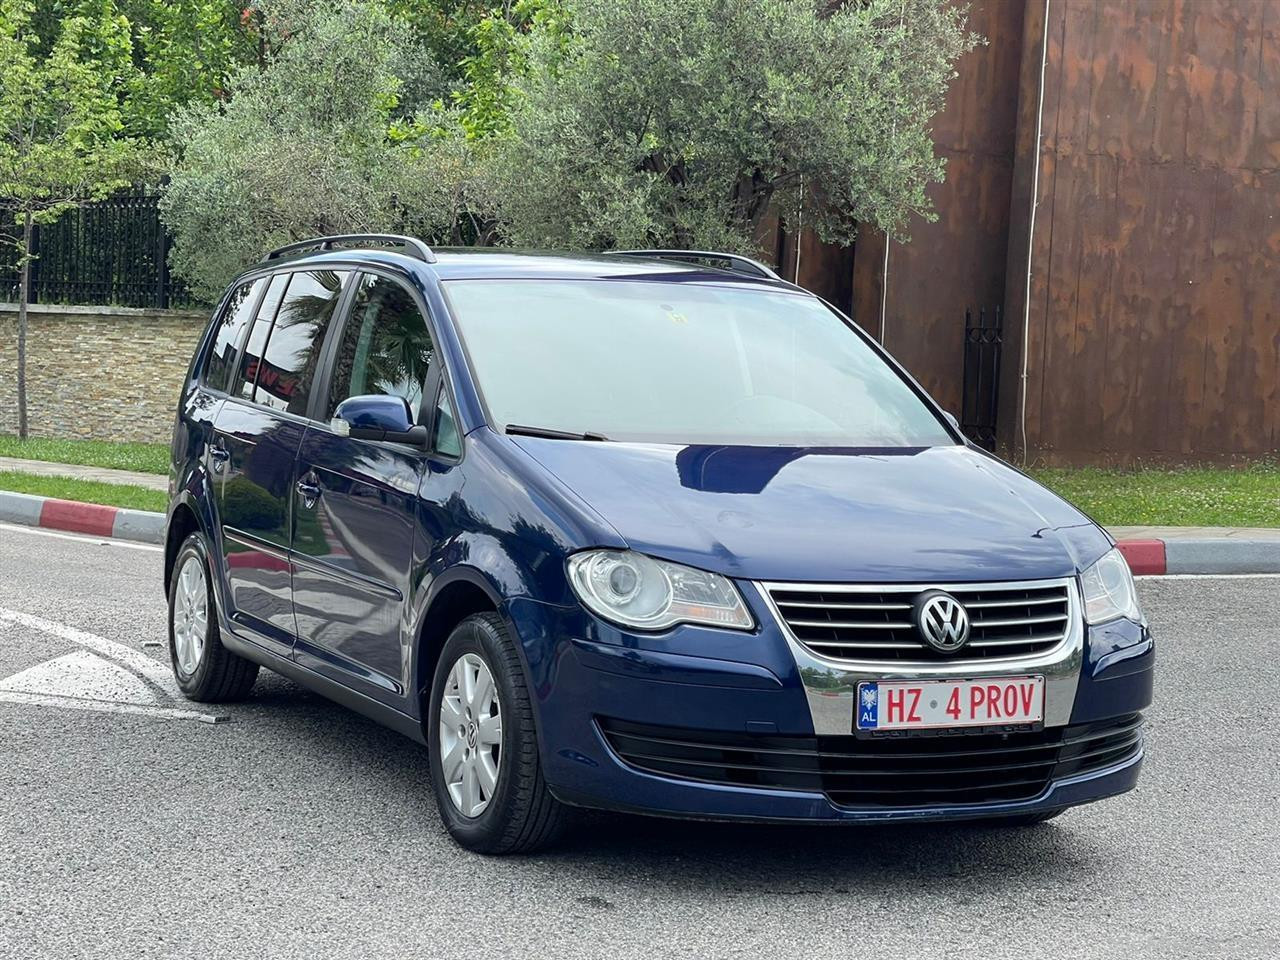 VW Volkswagen Touran Sapo ardhur nga zvicra